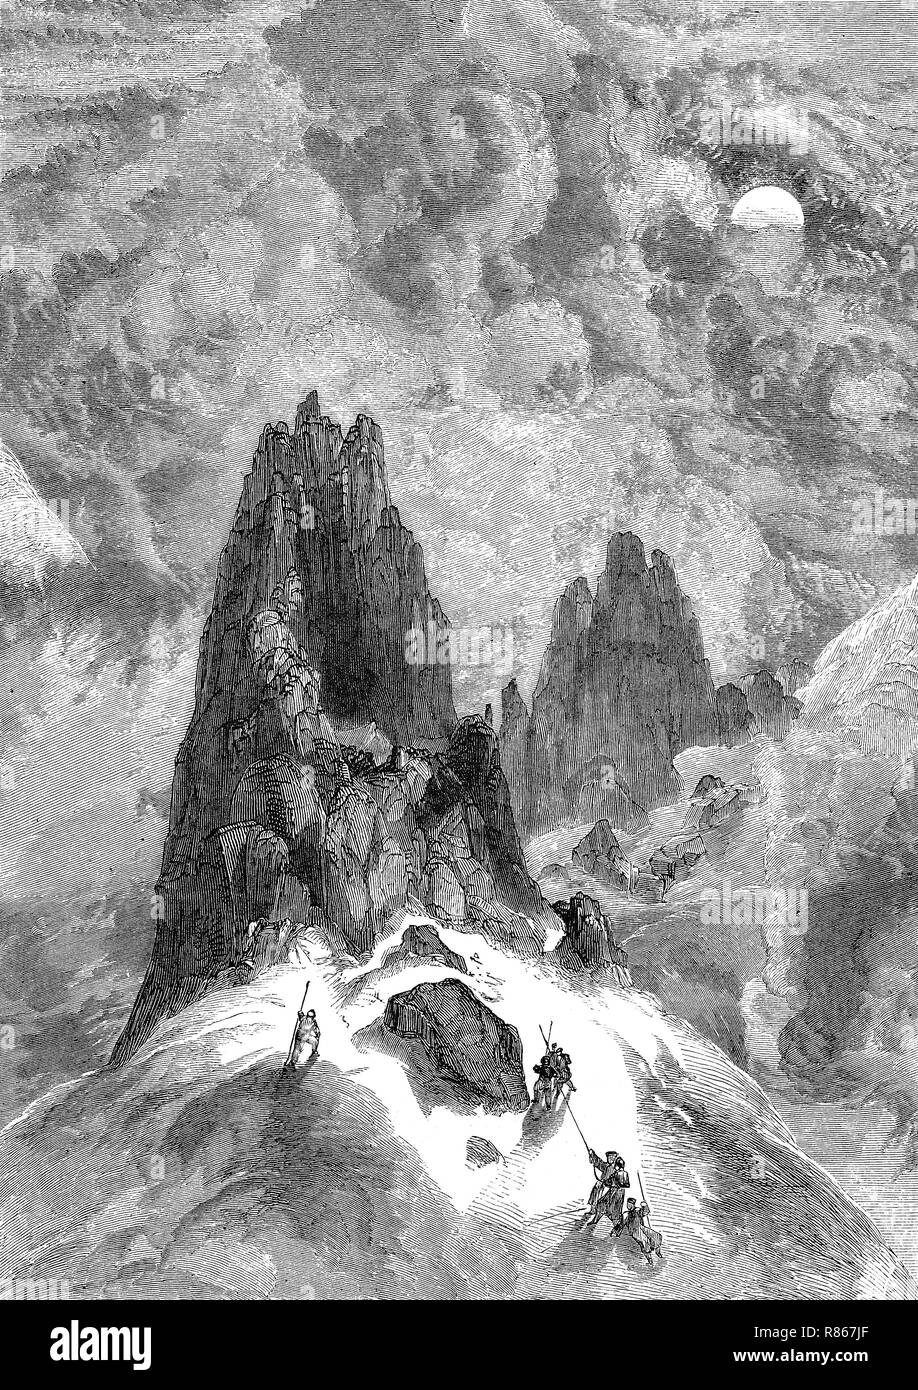 Mejor reproducción digital, escalada en montaña Montblanc, Francia, Bergsteiger am Montblanc, Frankreich, desde una impresión original desde el año 1855 Foto de stock